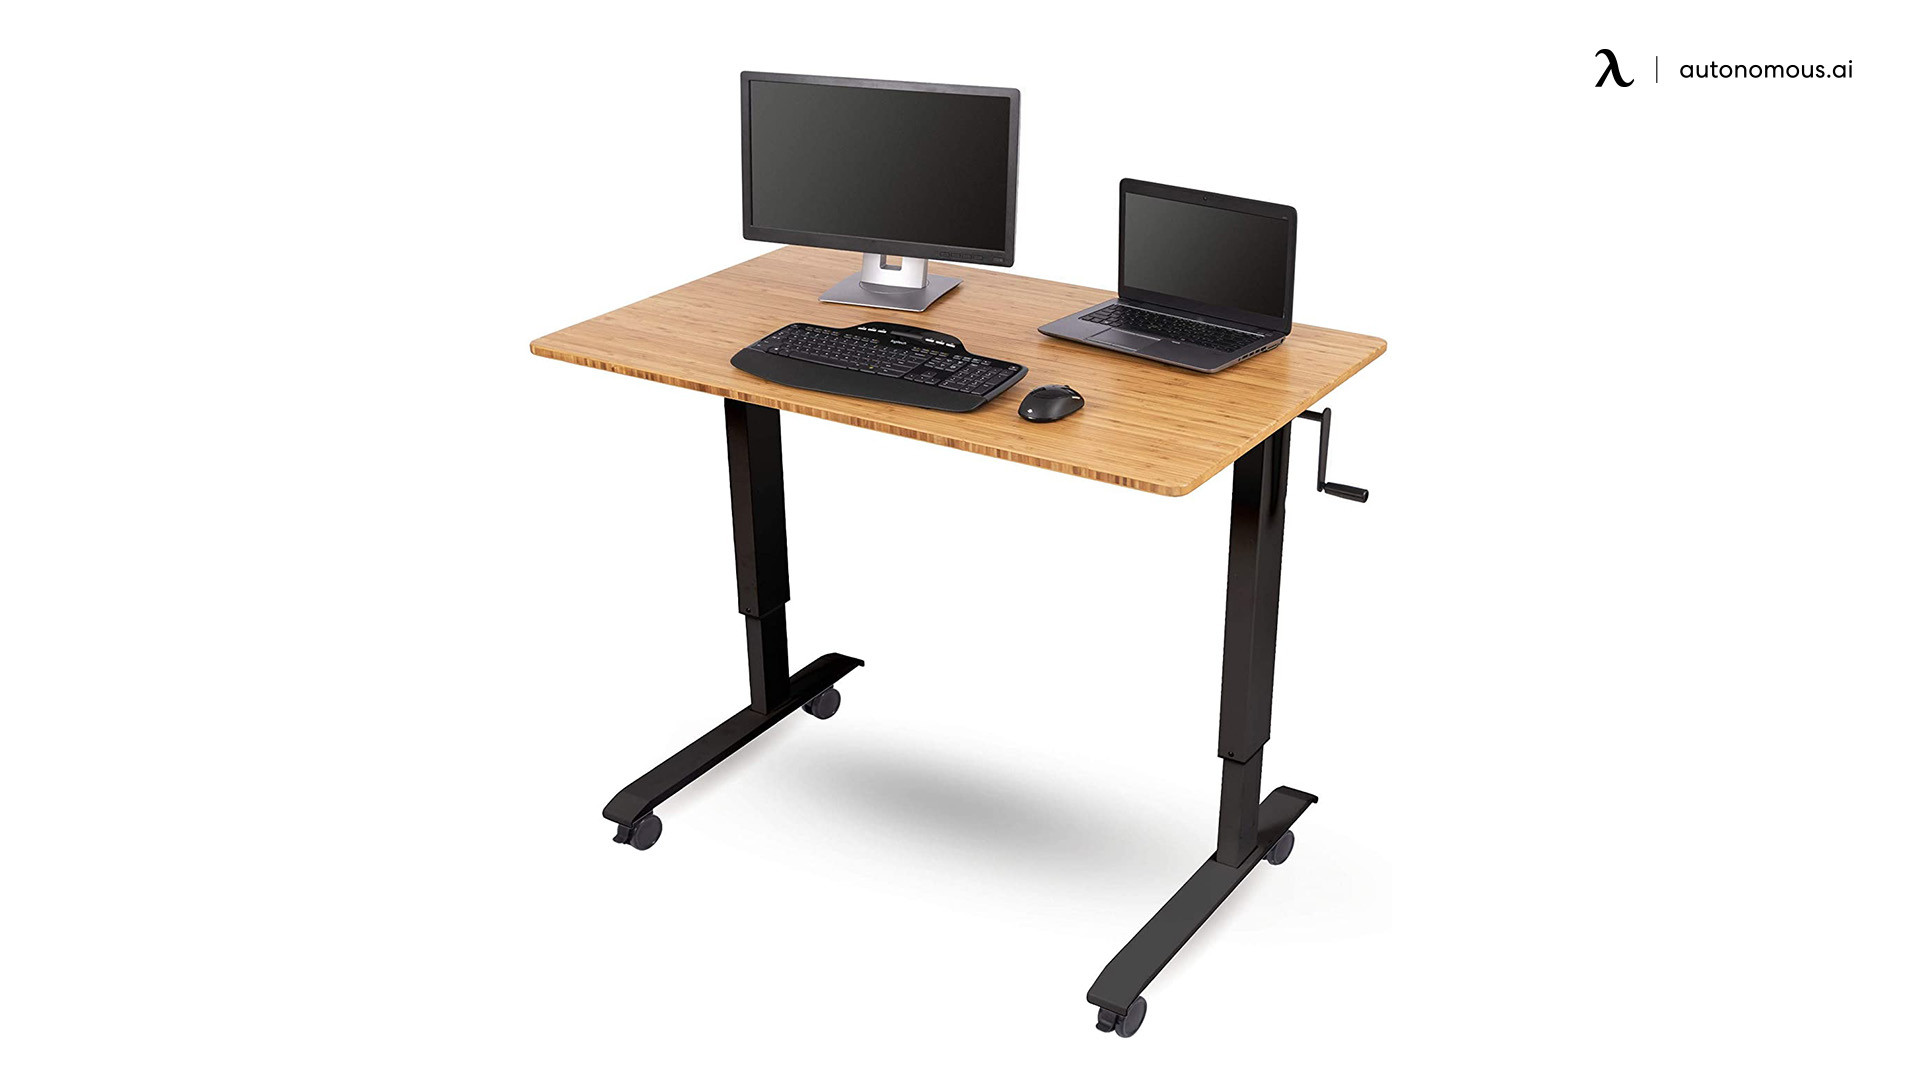 the crank adjustable height standing desk